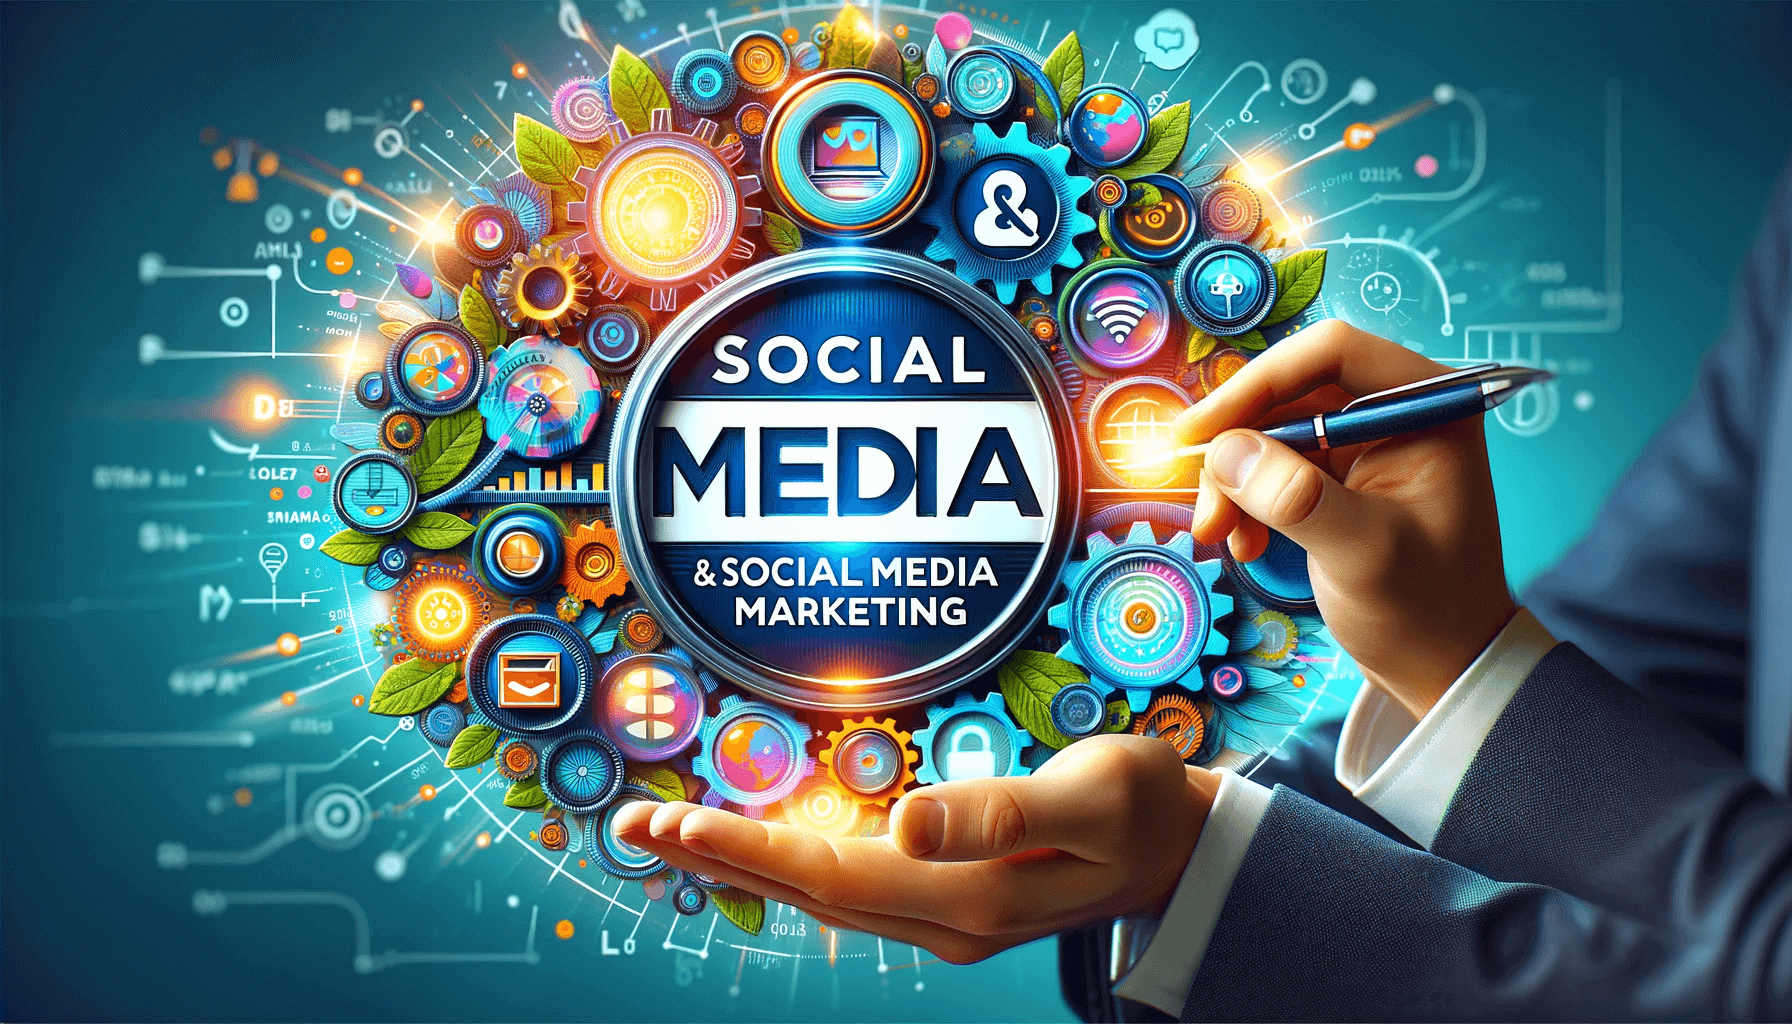 Social Media & Social Media Marketing - Definition - fusepro Glossar